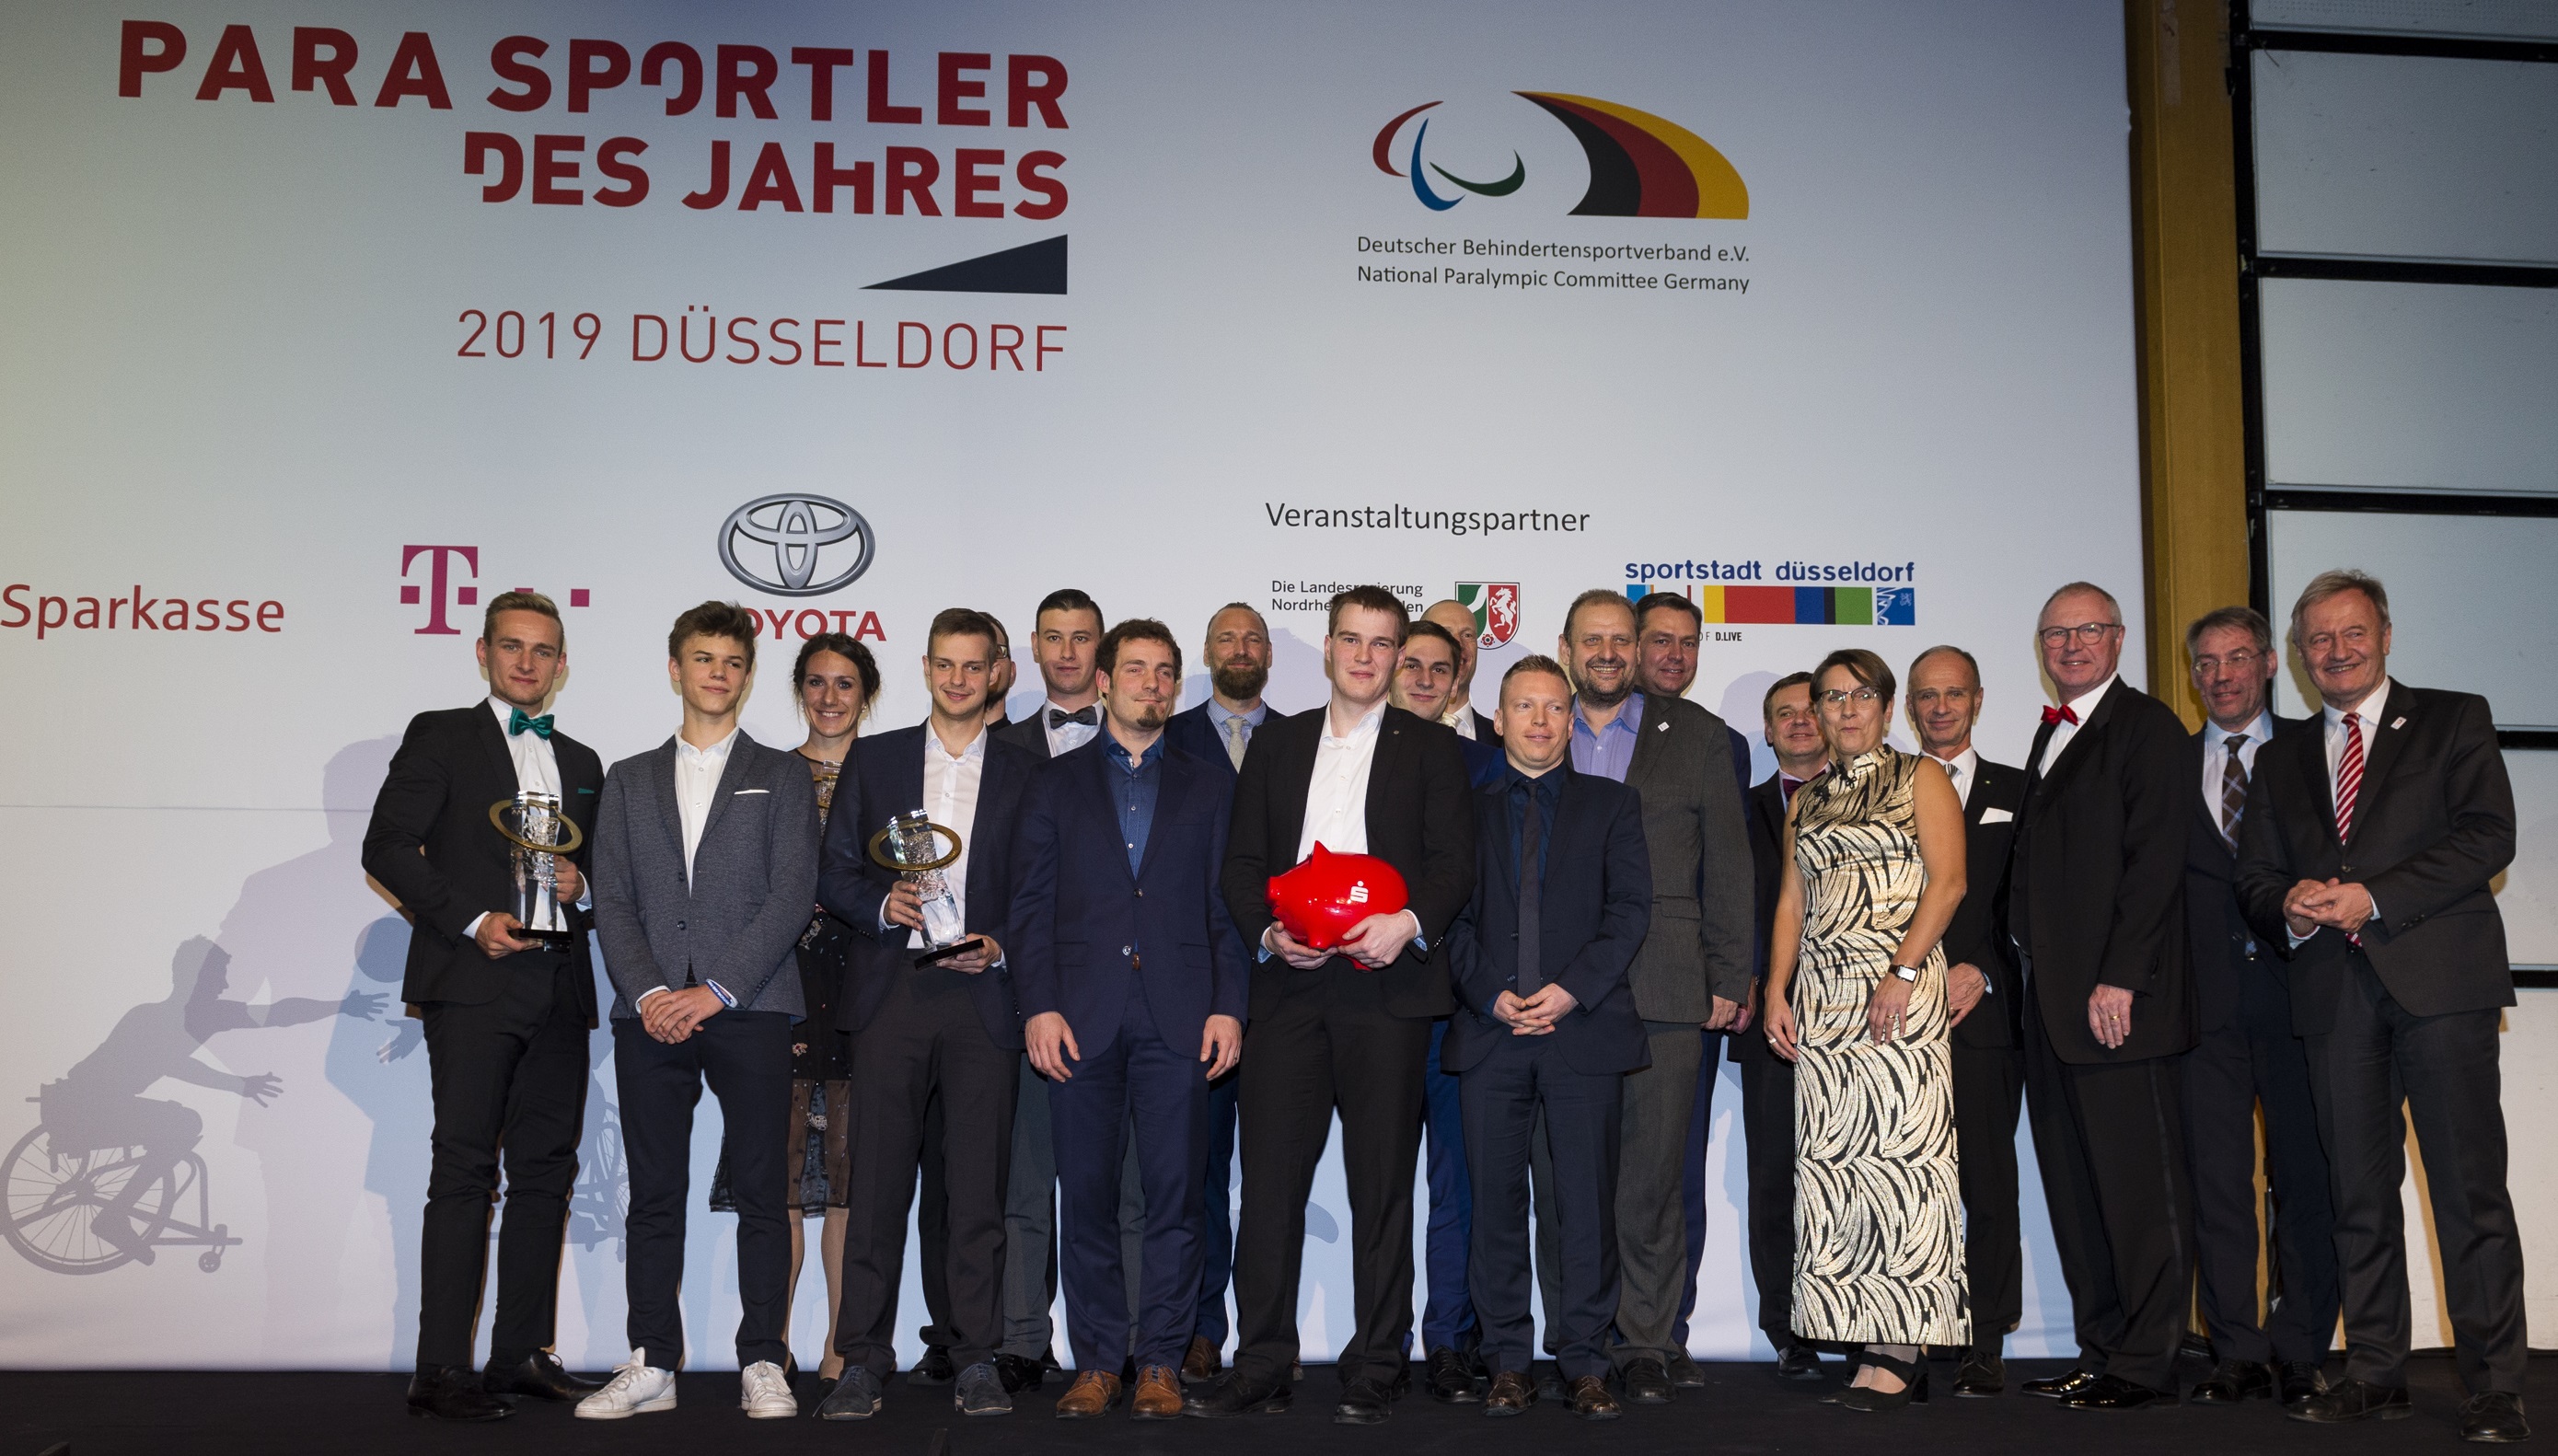 Gruppenbild der Parasportler des Jahres 2019 | Foto: Ralf Kuckuck / DBS